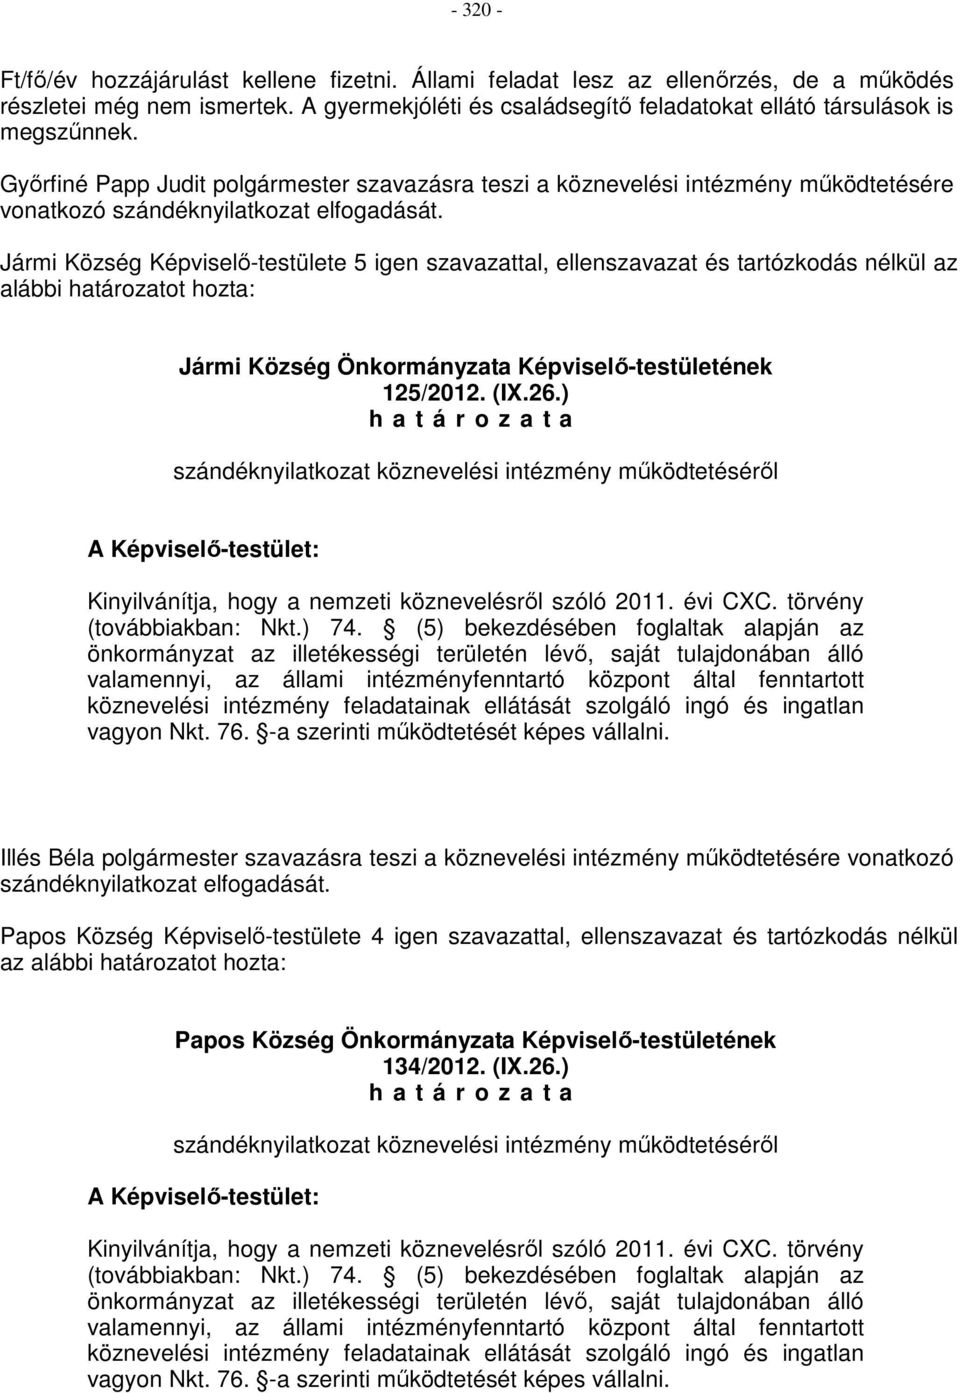 Jármi Község Képviselő-testülete 5 igen szavazattal, ellenszavazat és tartózkodás nélkül az alábbi határozatot hozta: Jármi Község Önkormányzata Képviselő-testületének 125/2012. (IX.26.